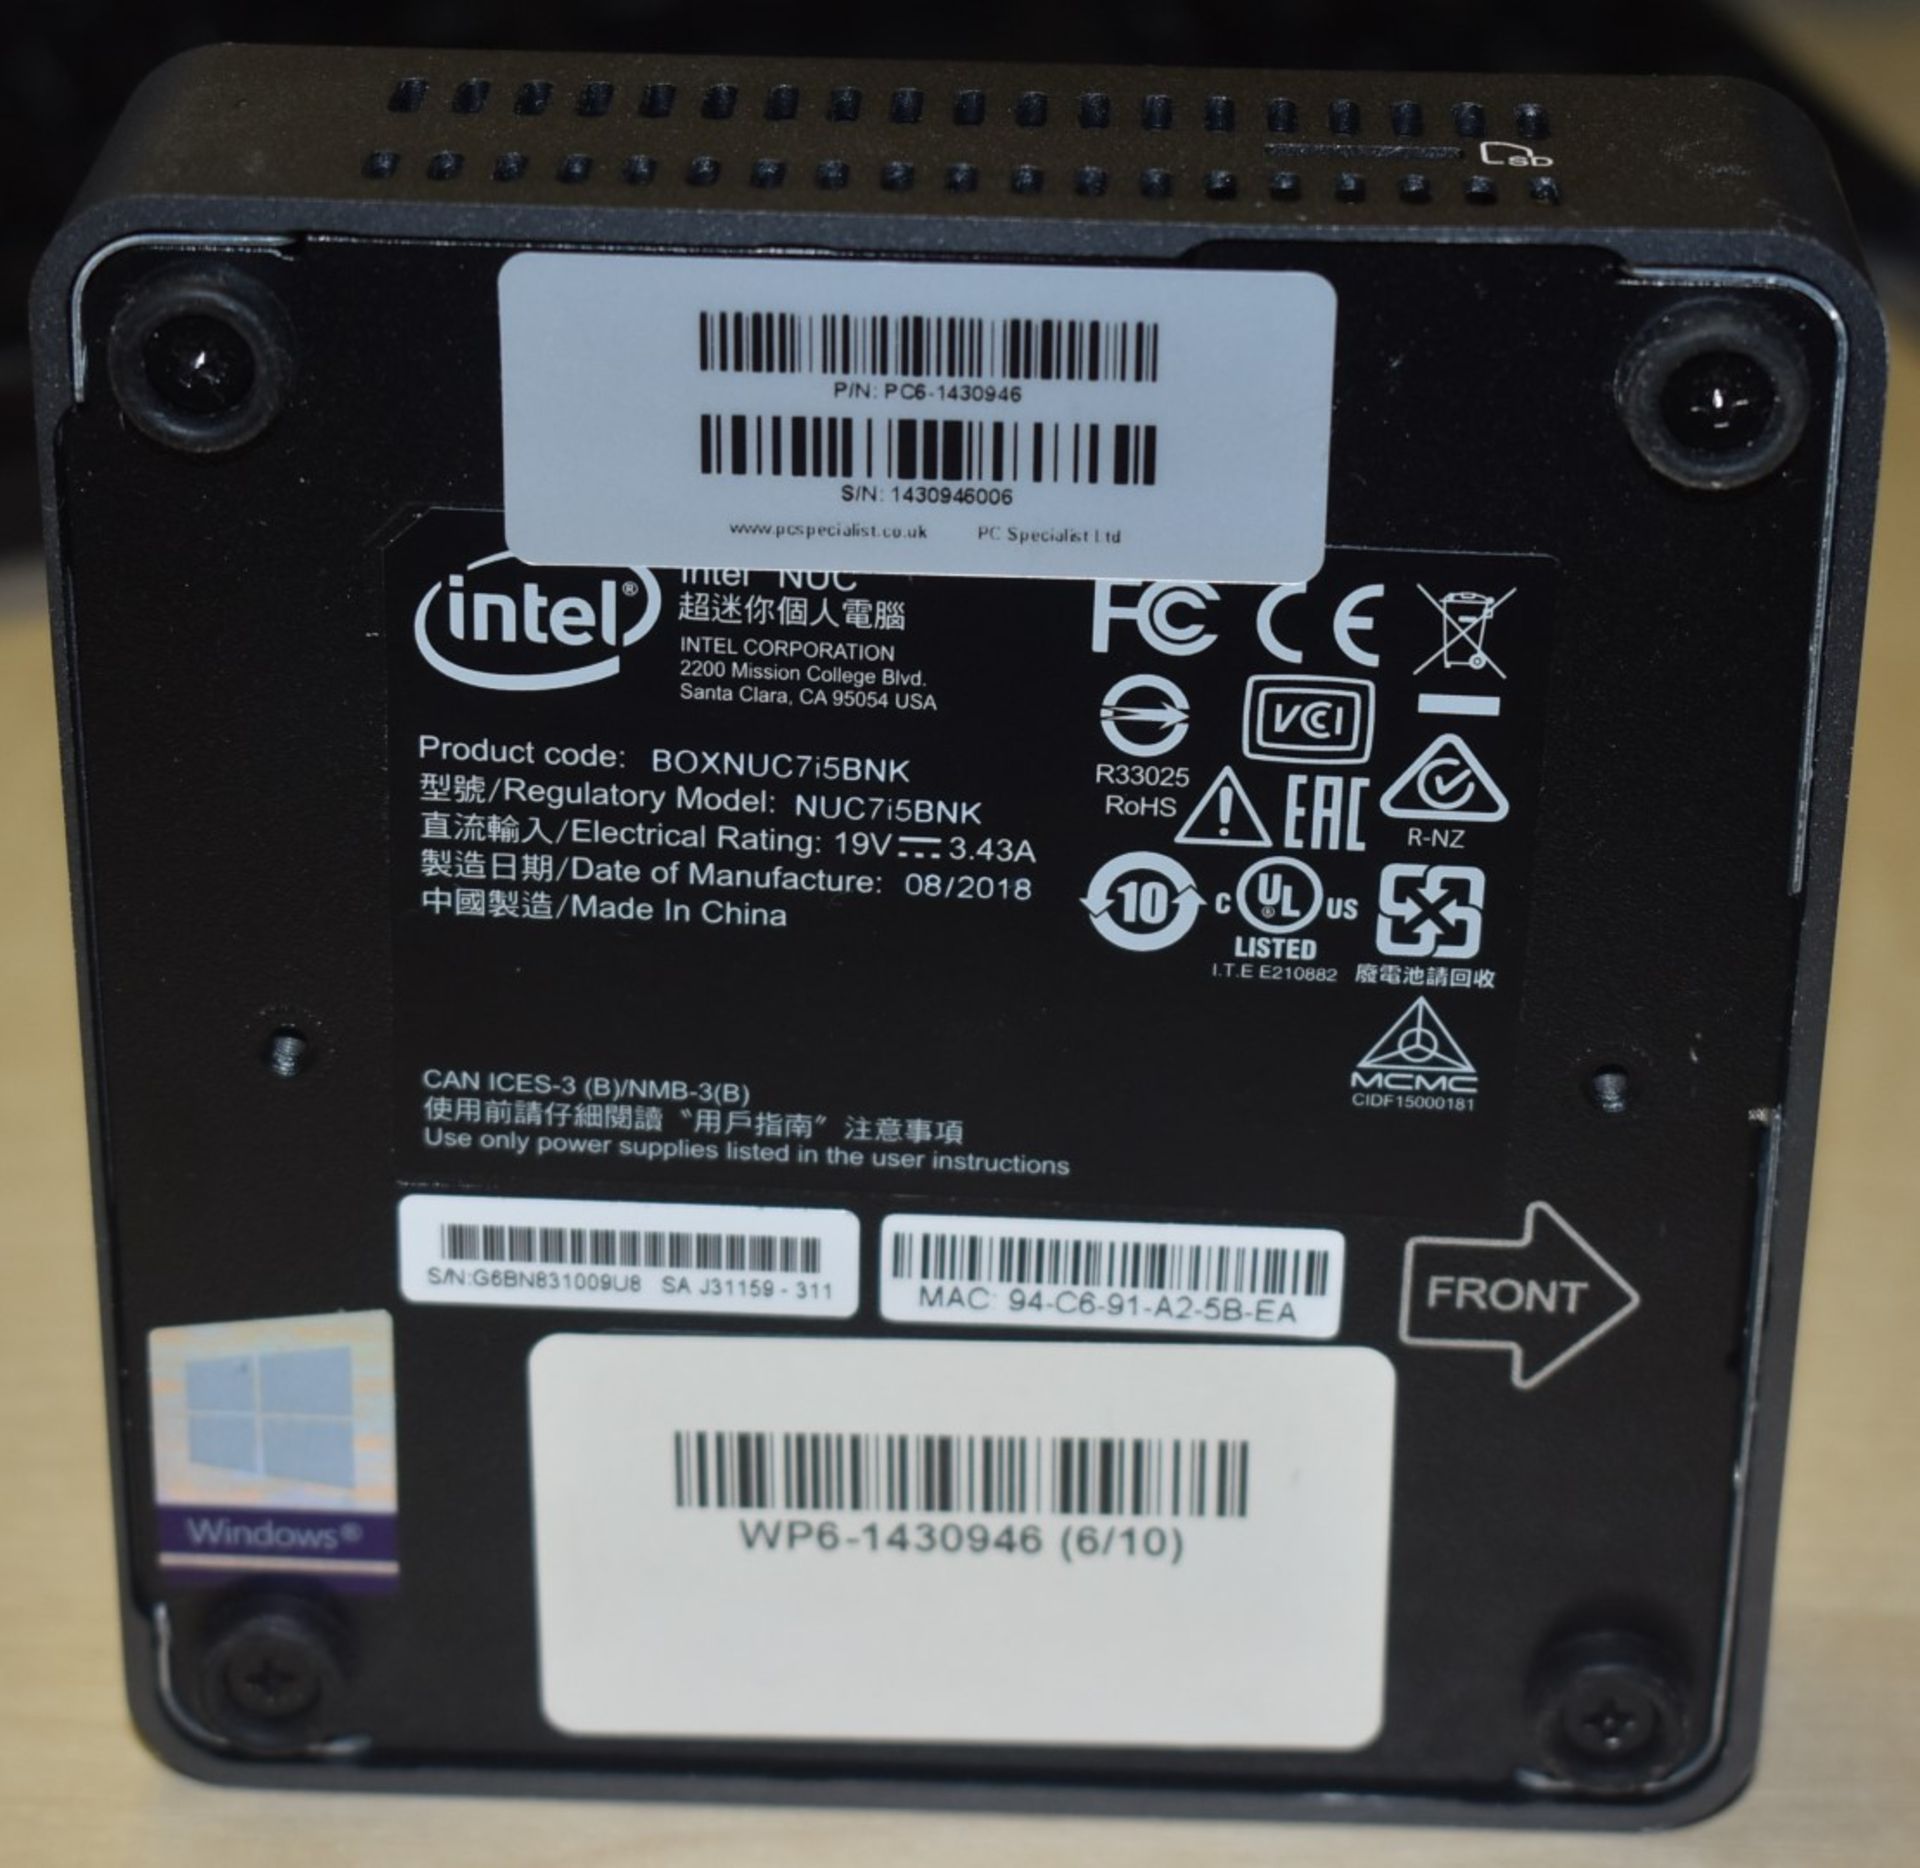 1 x Intel NUC Mini PC Featuring Intel i5-7260u 3.4Ghz Processor, 8GB DDR4 2133Mhz Ram, Intel Iris - Image 5 of 7